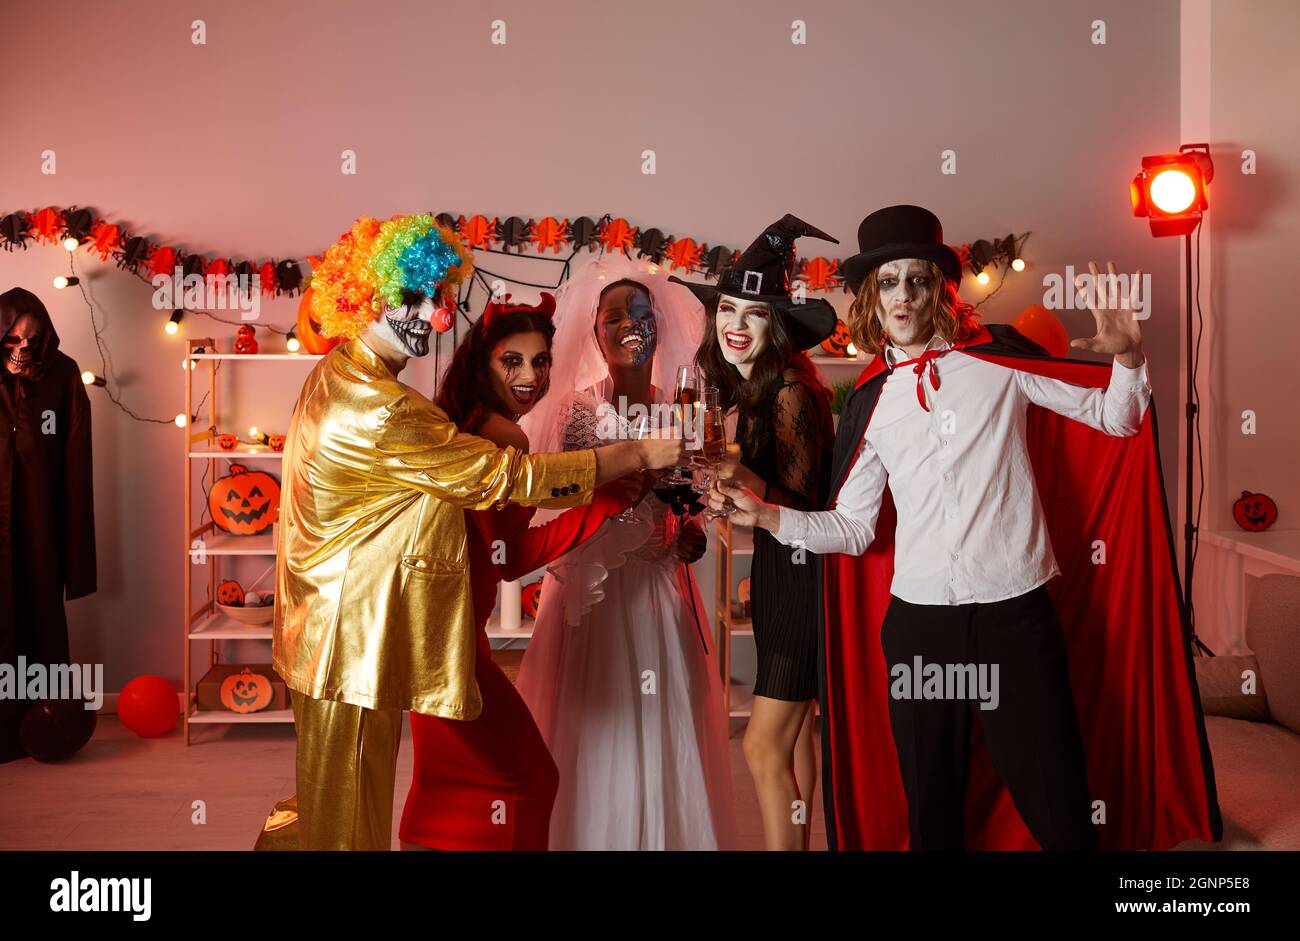 Groupe de jeunes heureux qui boivent et s'amusent lors d'une fête d'Halloween à la maison Banque D'Images